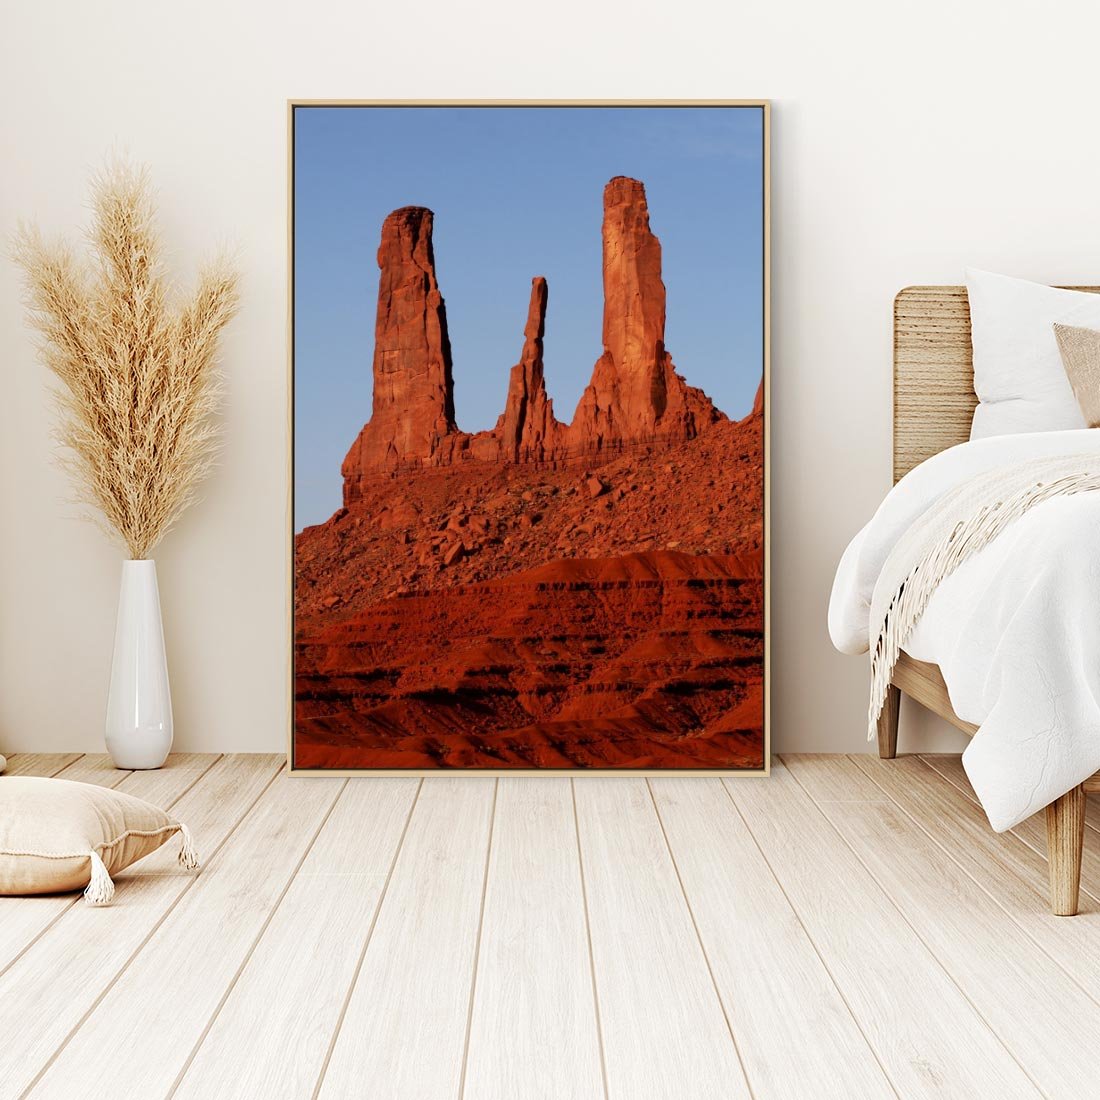 Obraz w ramie 50x70 - Wielki Kanion - majestat pustyni - Wielki Kanion, pustynia - rama drewno